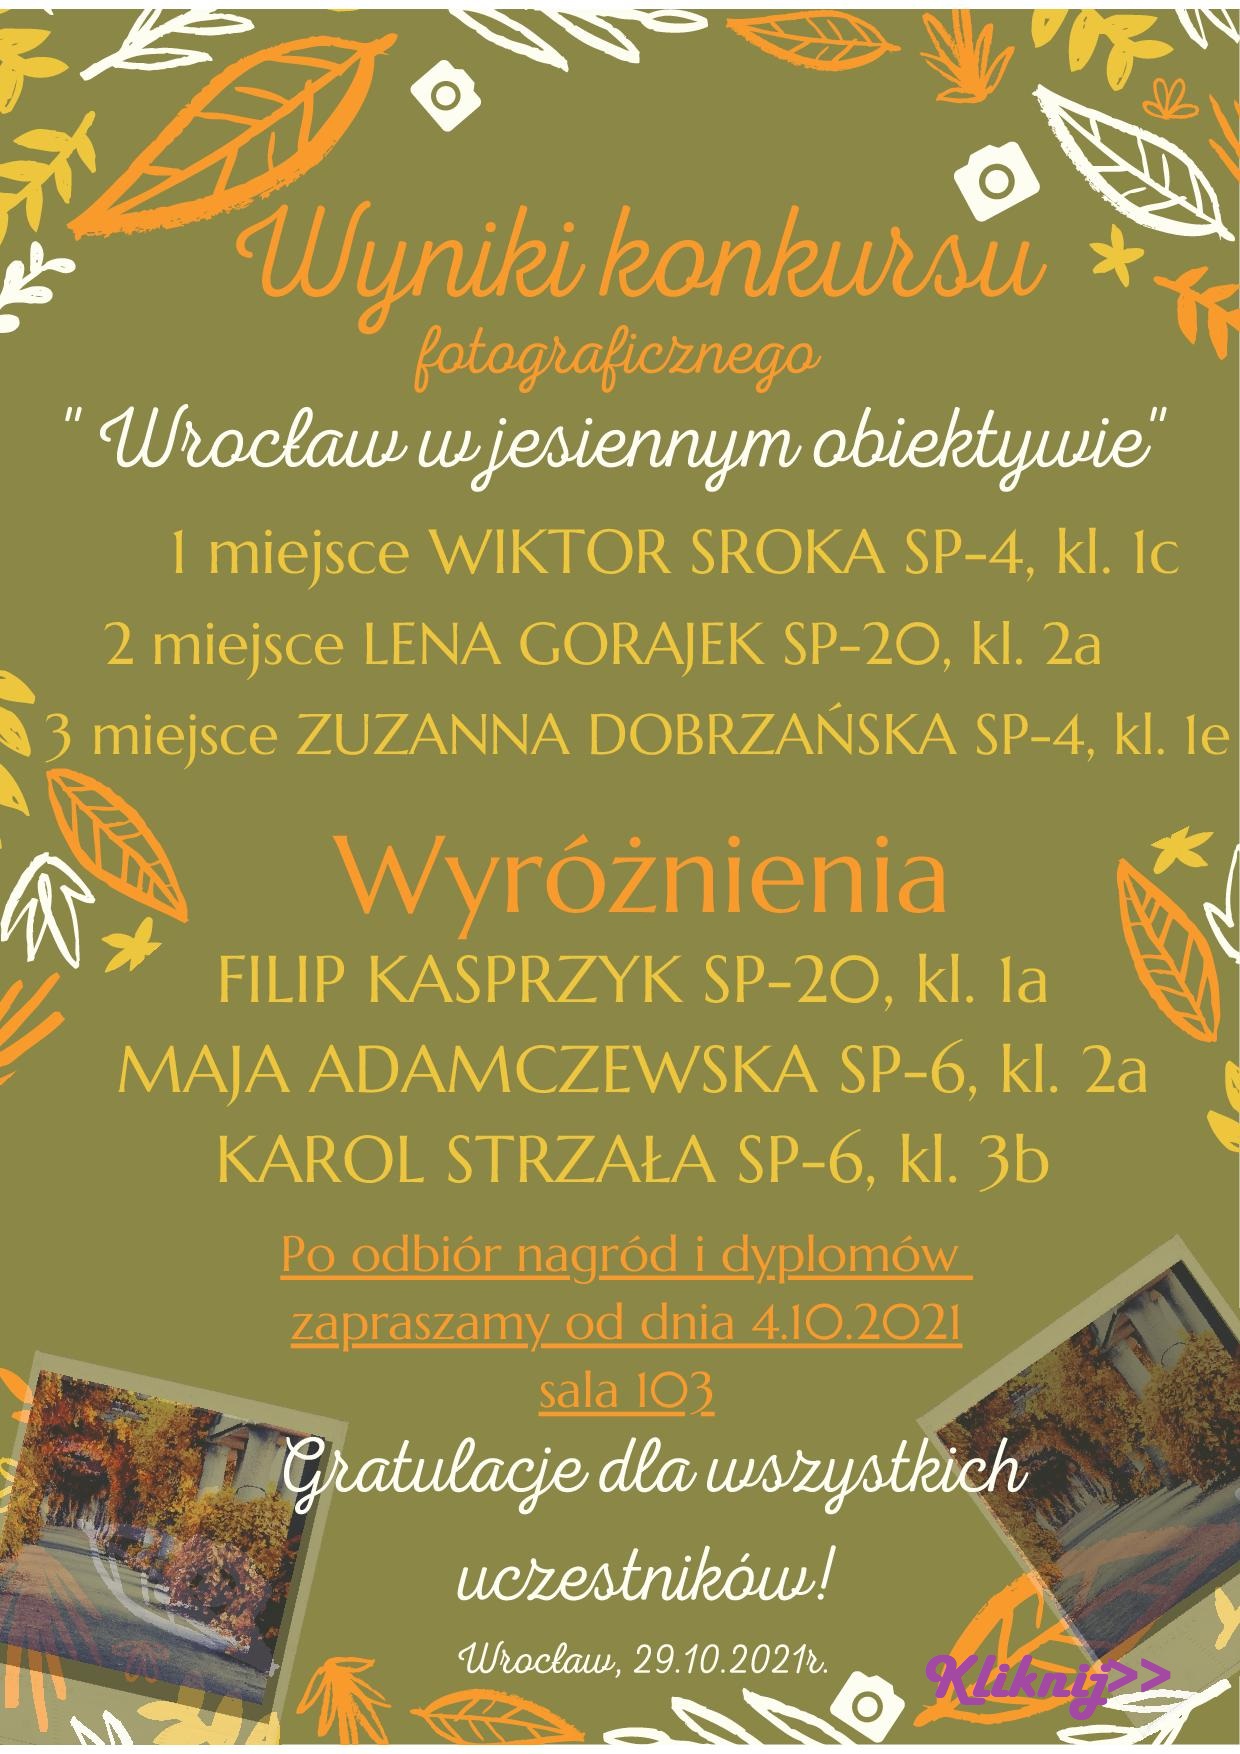 Wroclaw w jesiennym obiektywie WYNIKIv2